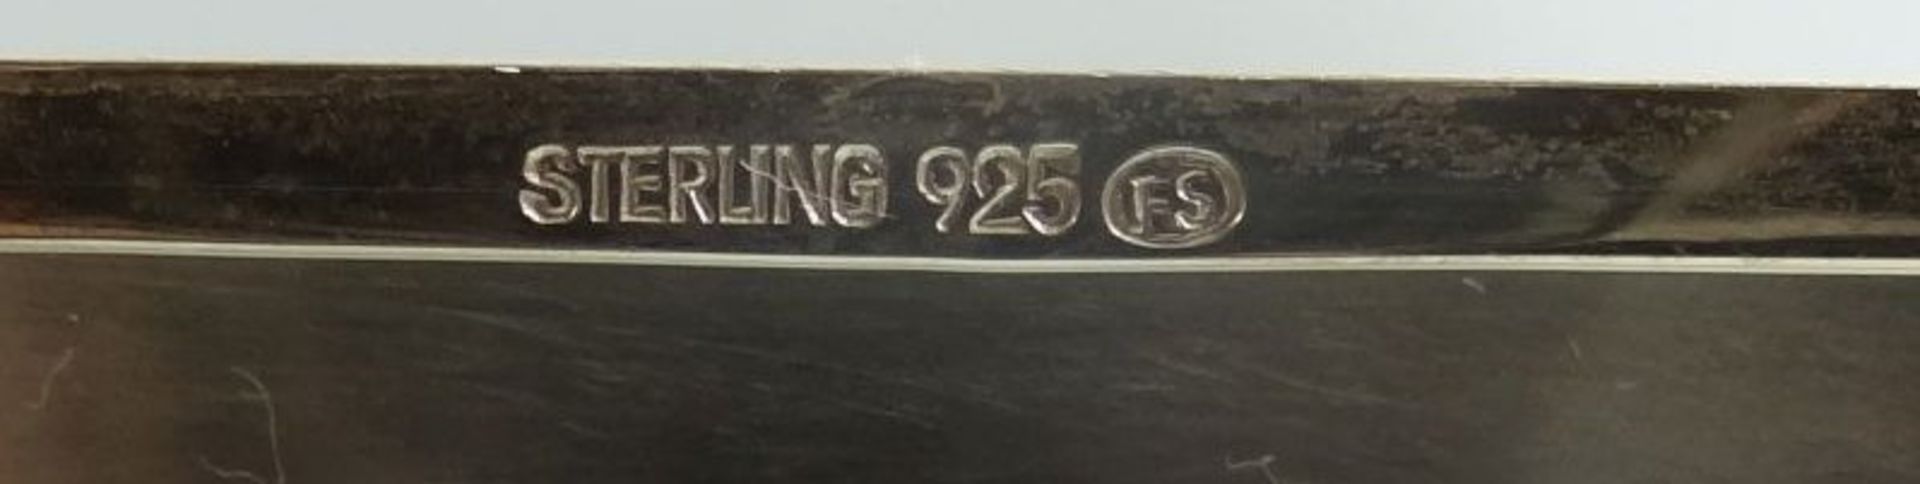 eckiges Silber-925- Zigarettenetui, 10x9 cm, 158 gr. - Bild 6 aus 6